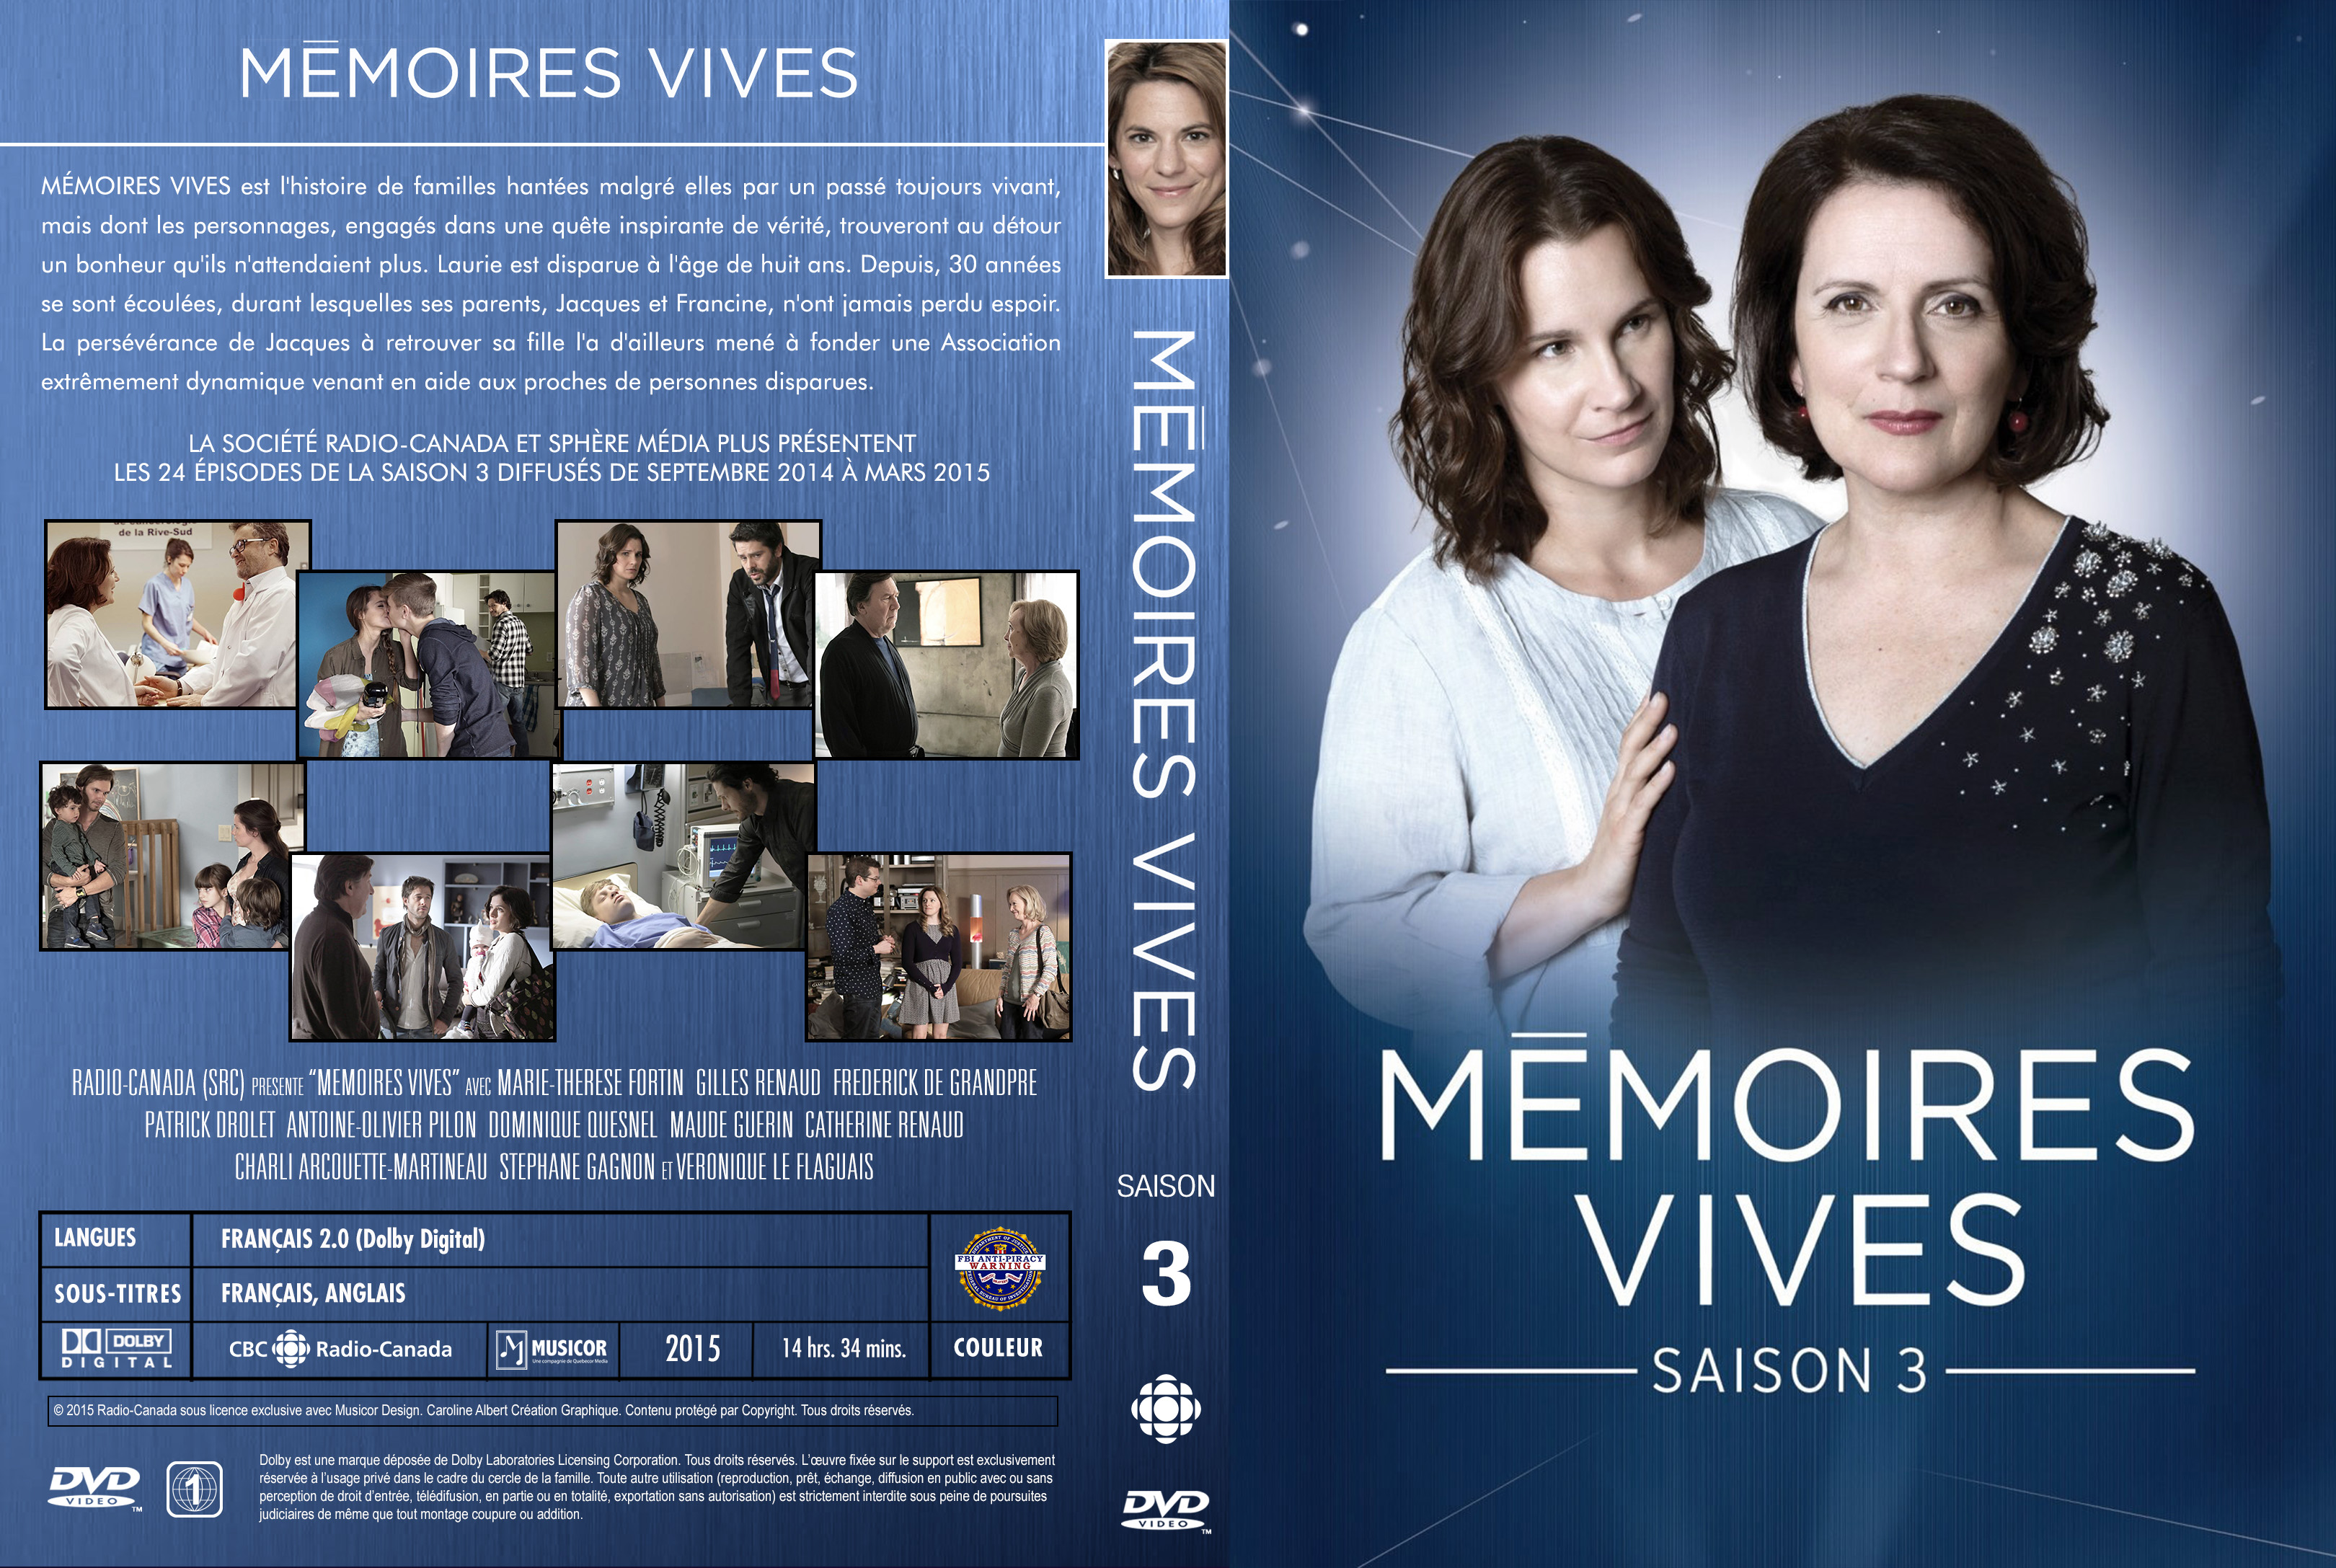 Jaquette DVD Memoires Vives Saison 3 custom